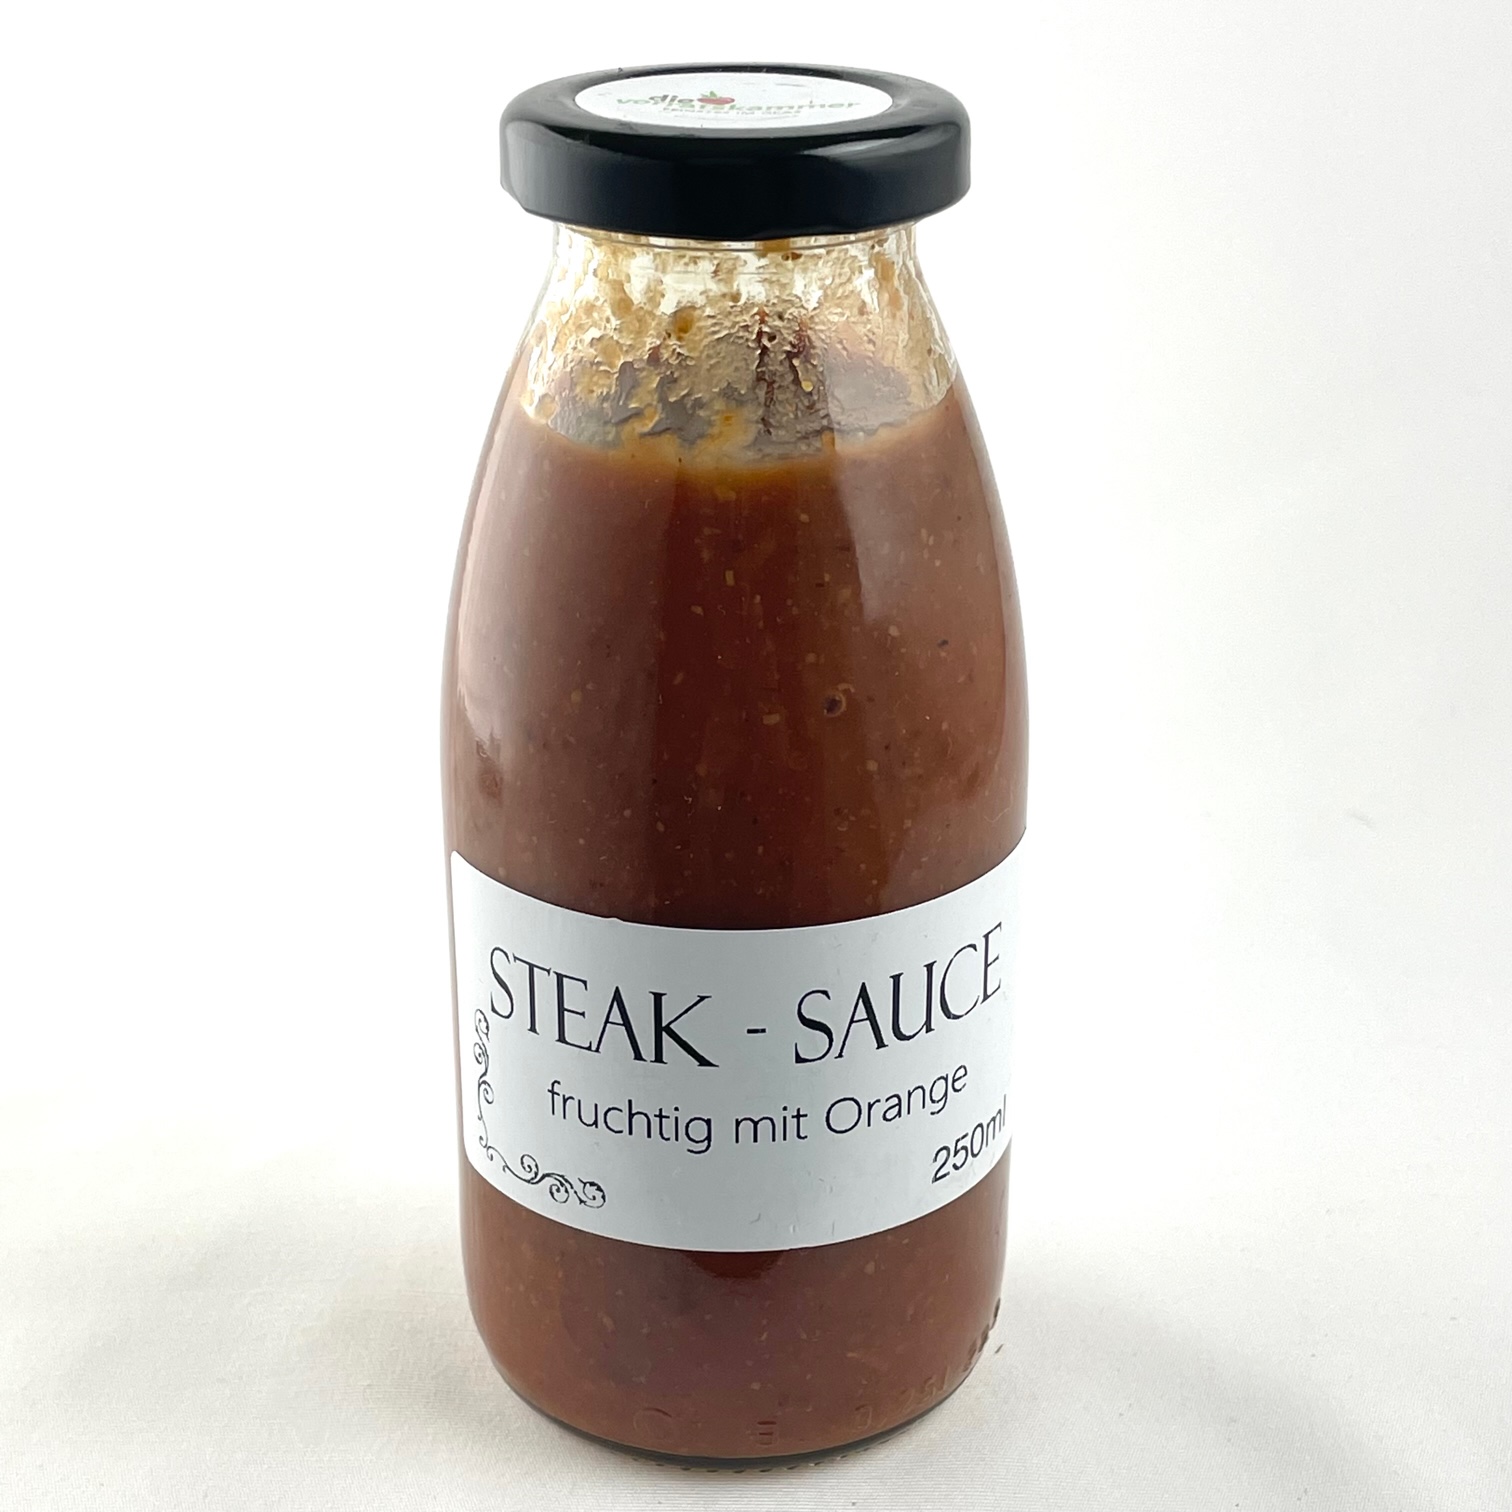 Steak-Sauce